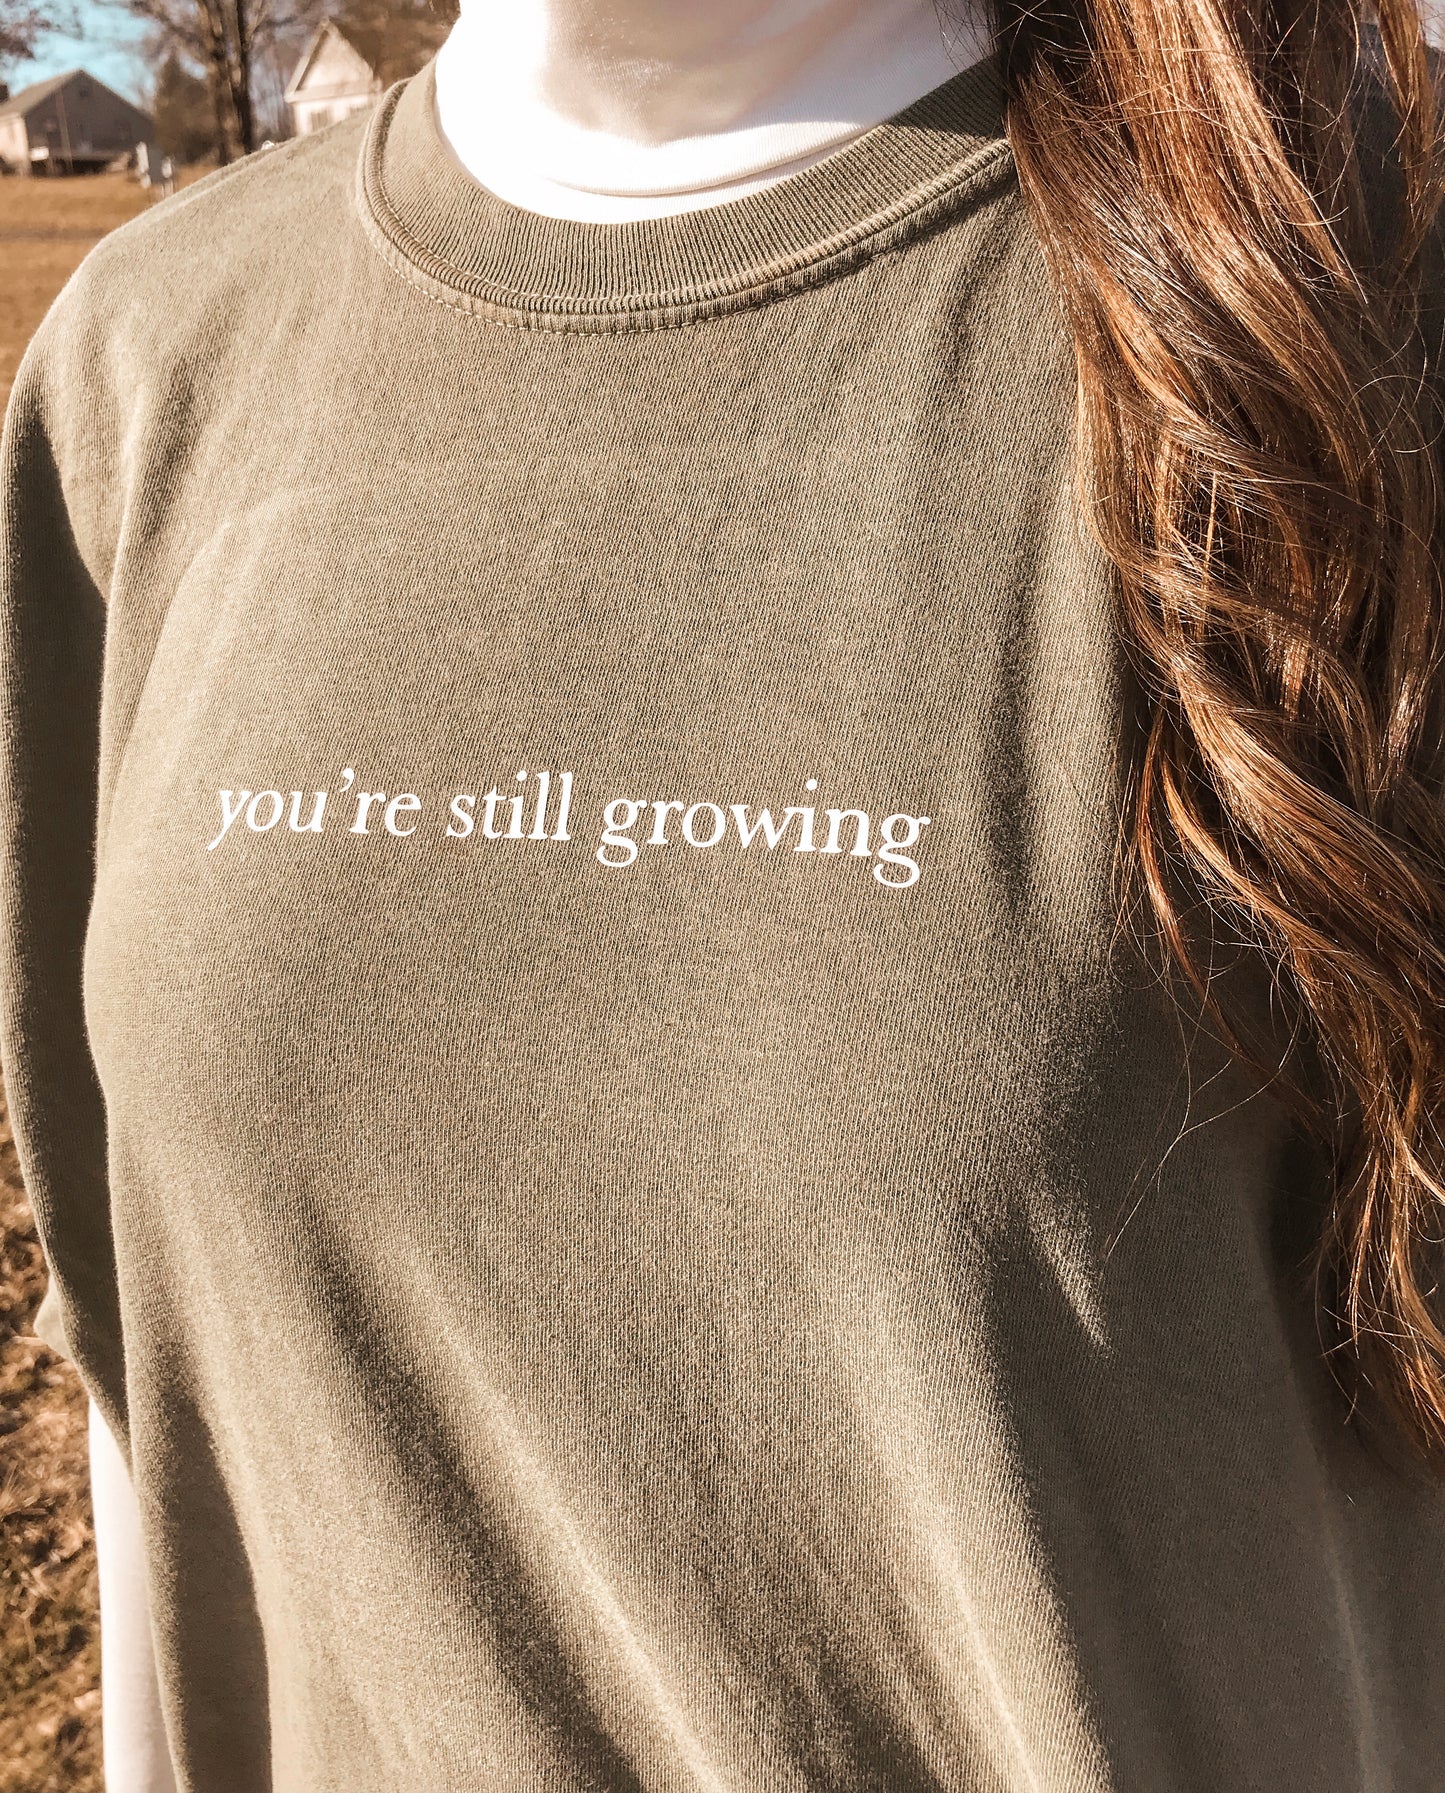 Still Growing T-shirt